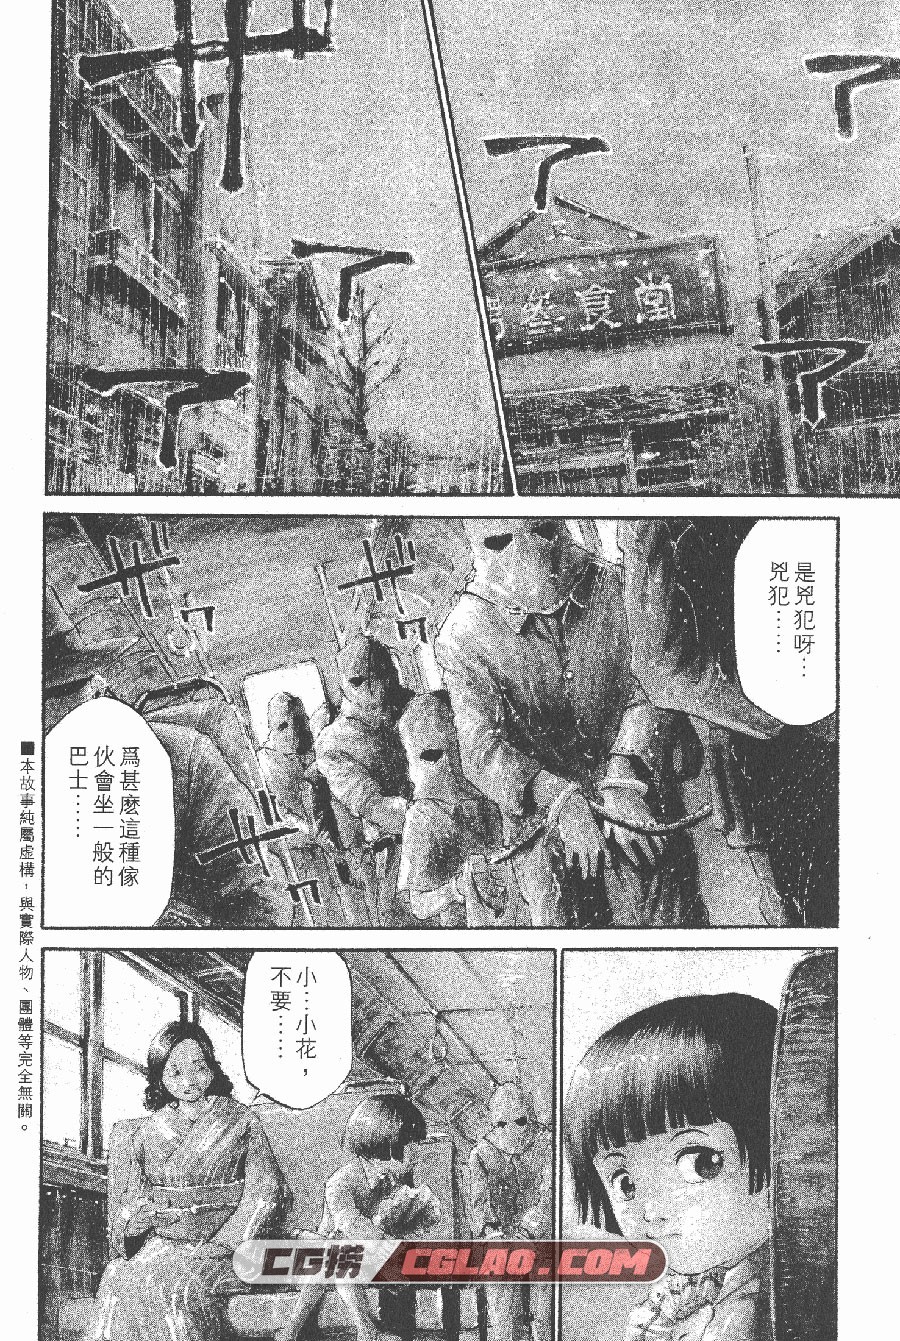 少年犯之七人 安部让二 柿崎正澄 1-22卷 漫画完结下载百度云,RB01_004.jpg